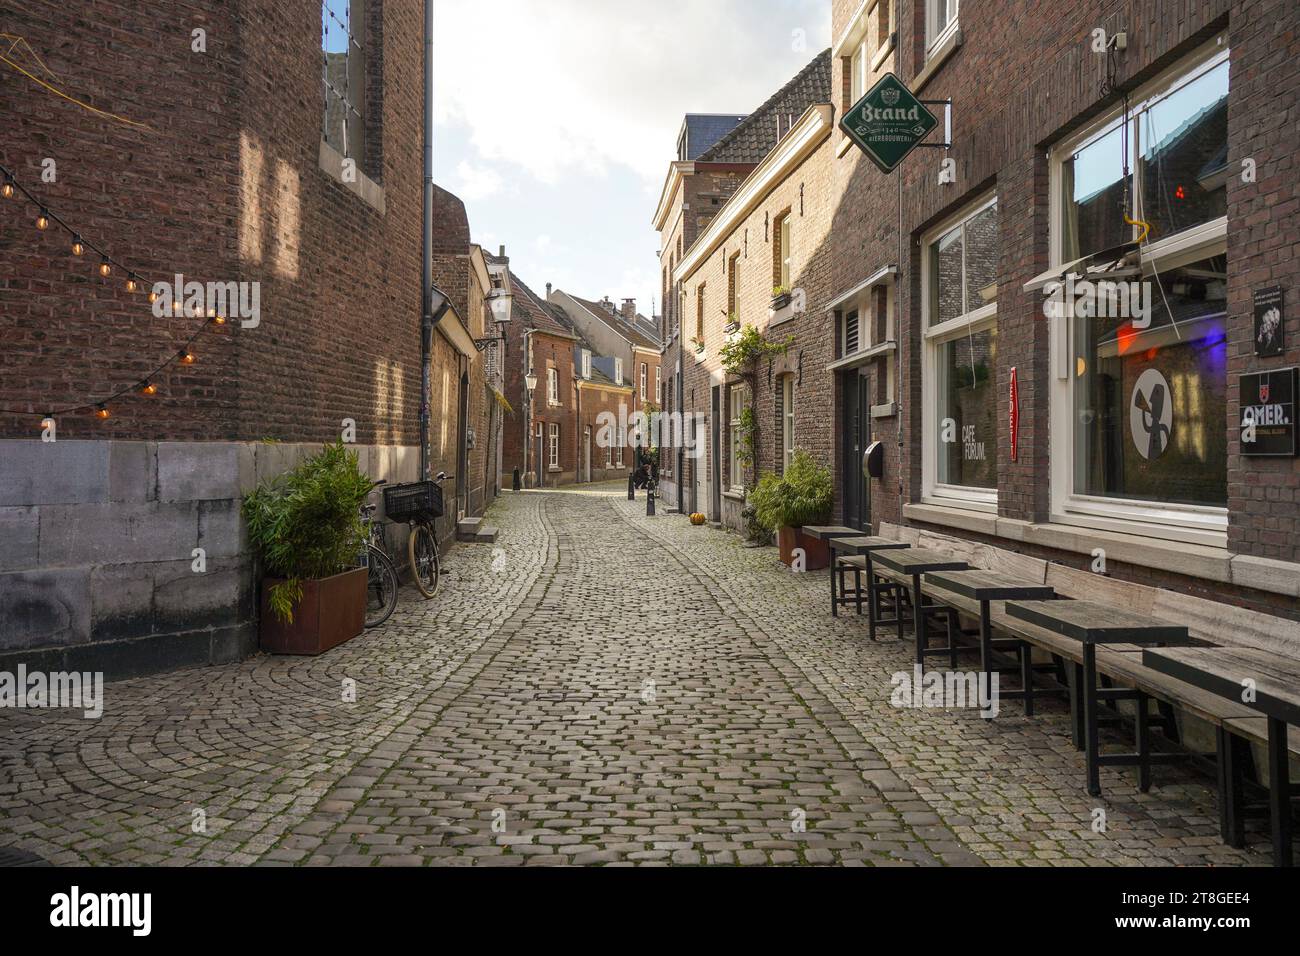 Jekerkwartier, rue Cobblestone, quartier historique dans le vieux centre-ville de Maastricht, Limbourg, pays-Bas. Banque D'Images